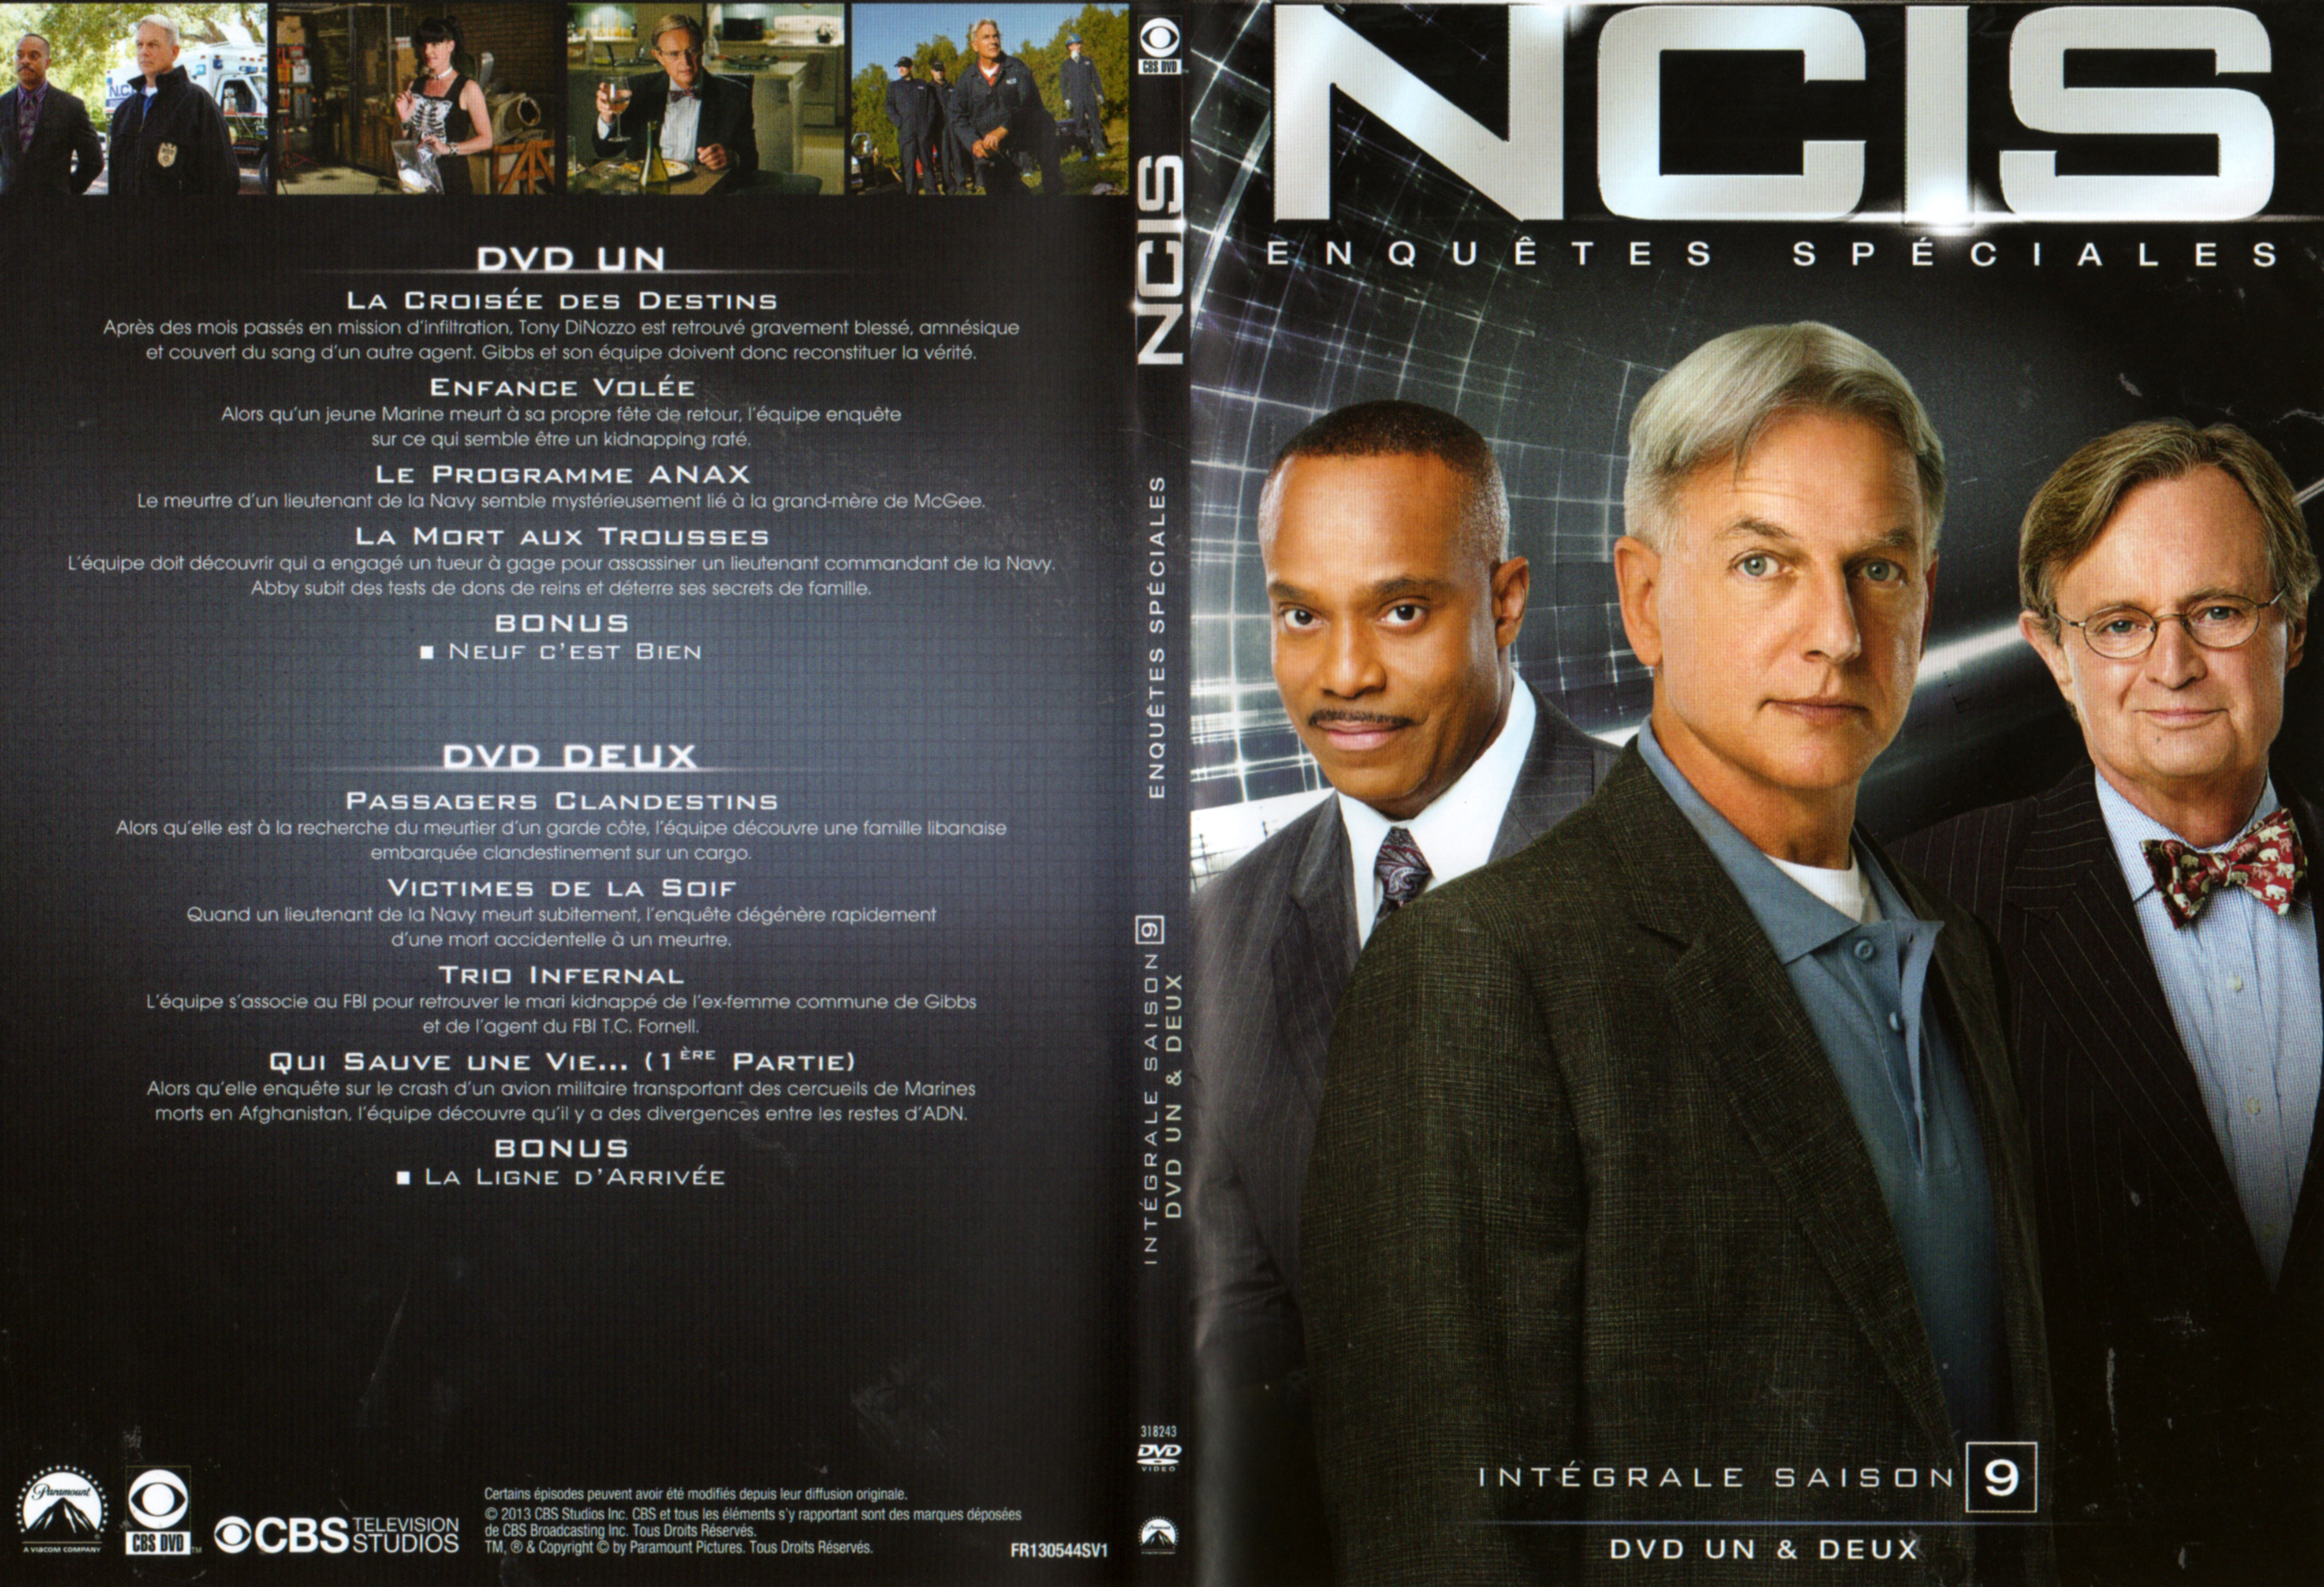 Jaquette DVD NCIS Saison 9 DVD 1